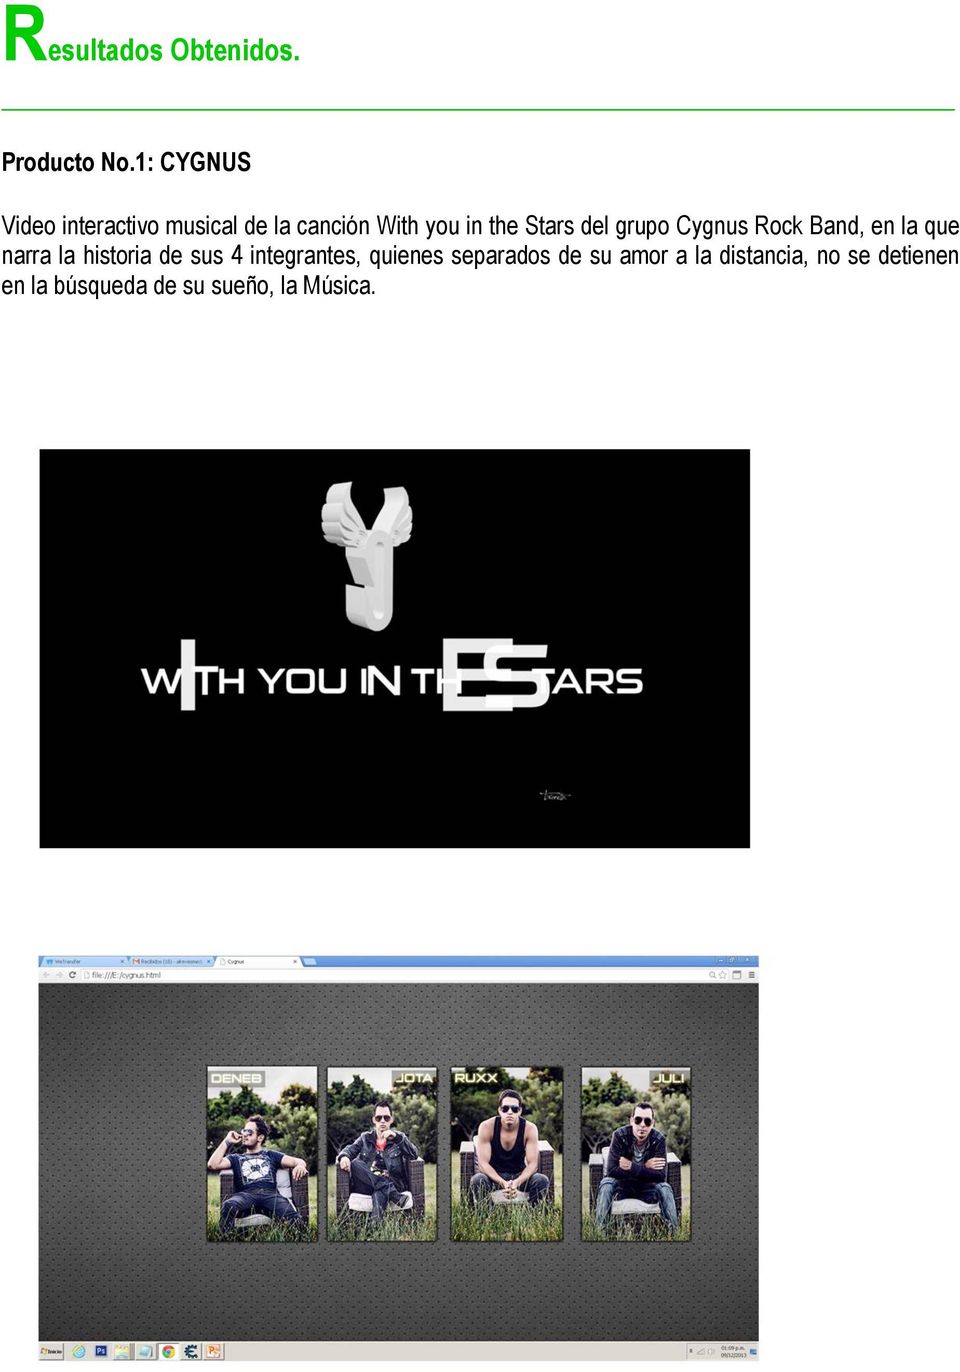 Stars del grupo Cygnus Rock Band, en la que narra la historia de sus 4